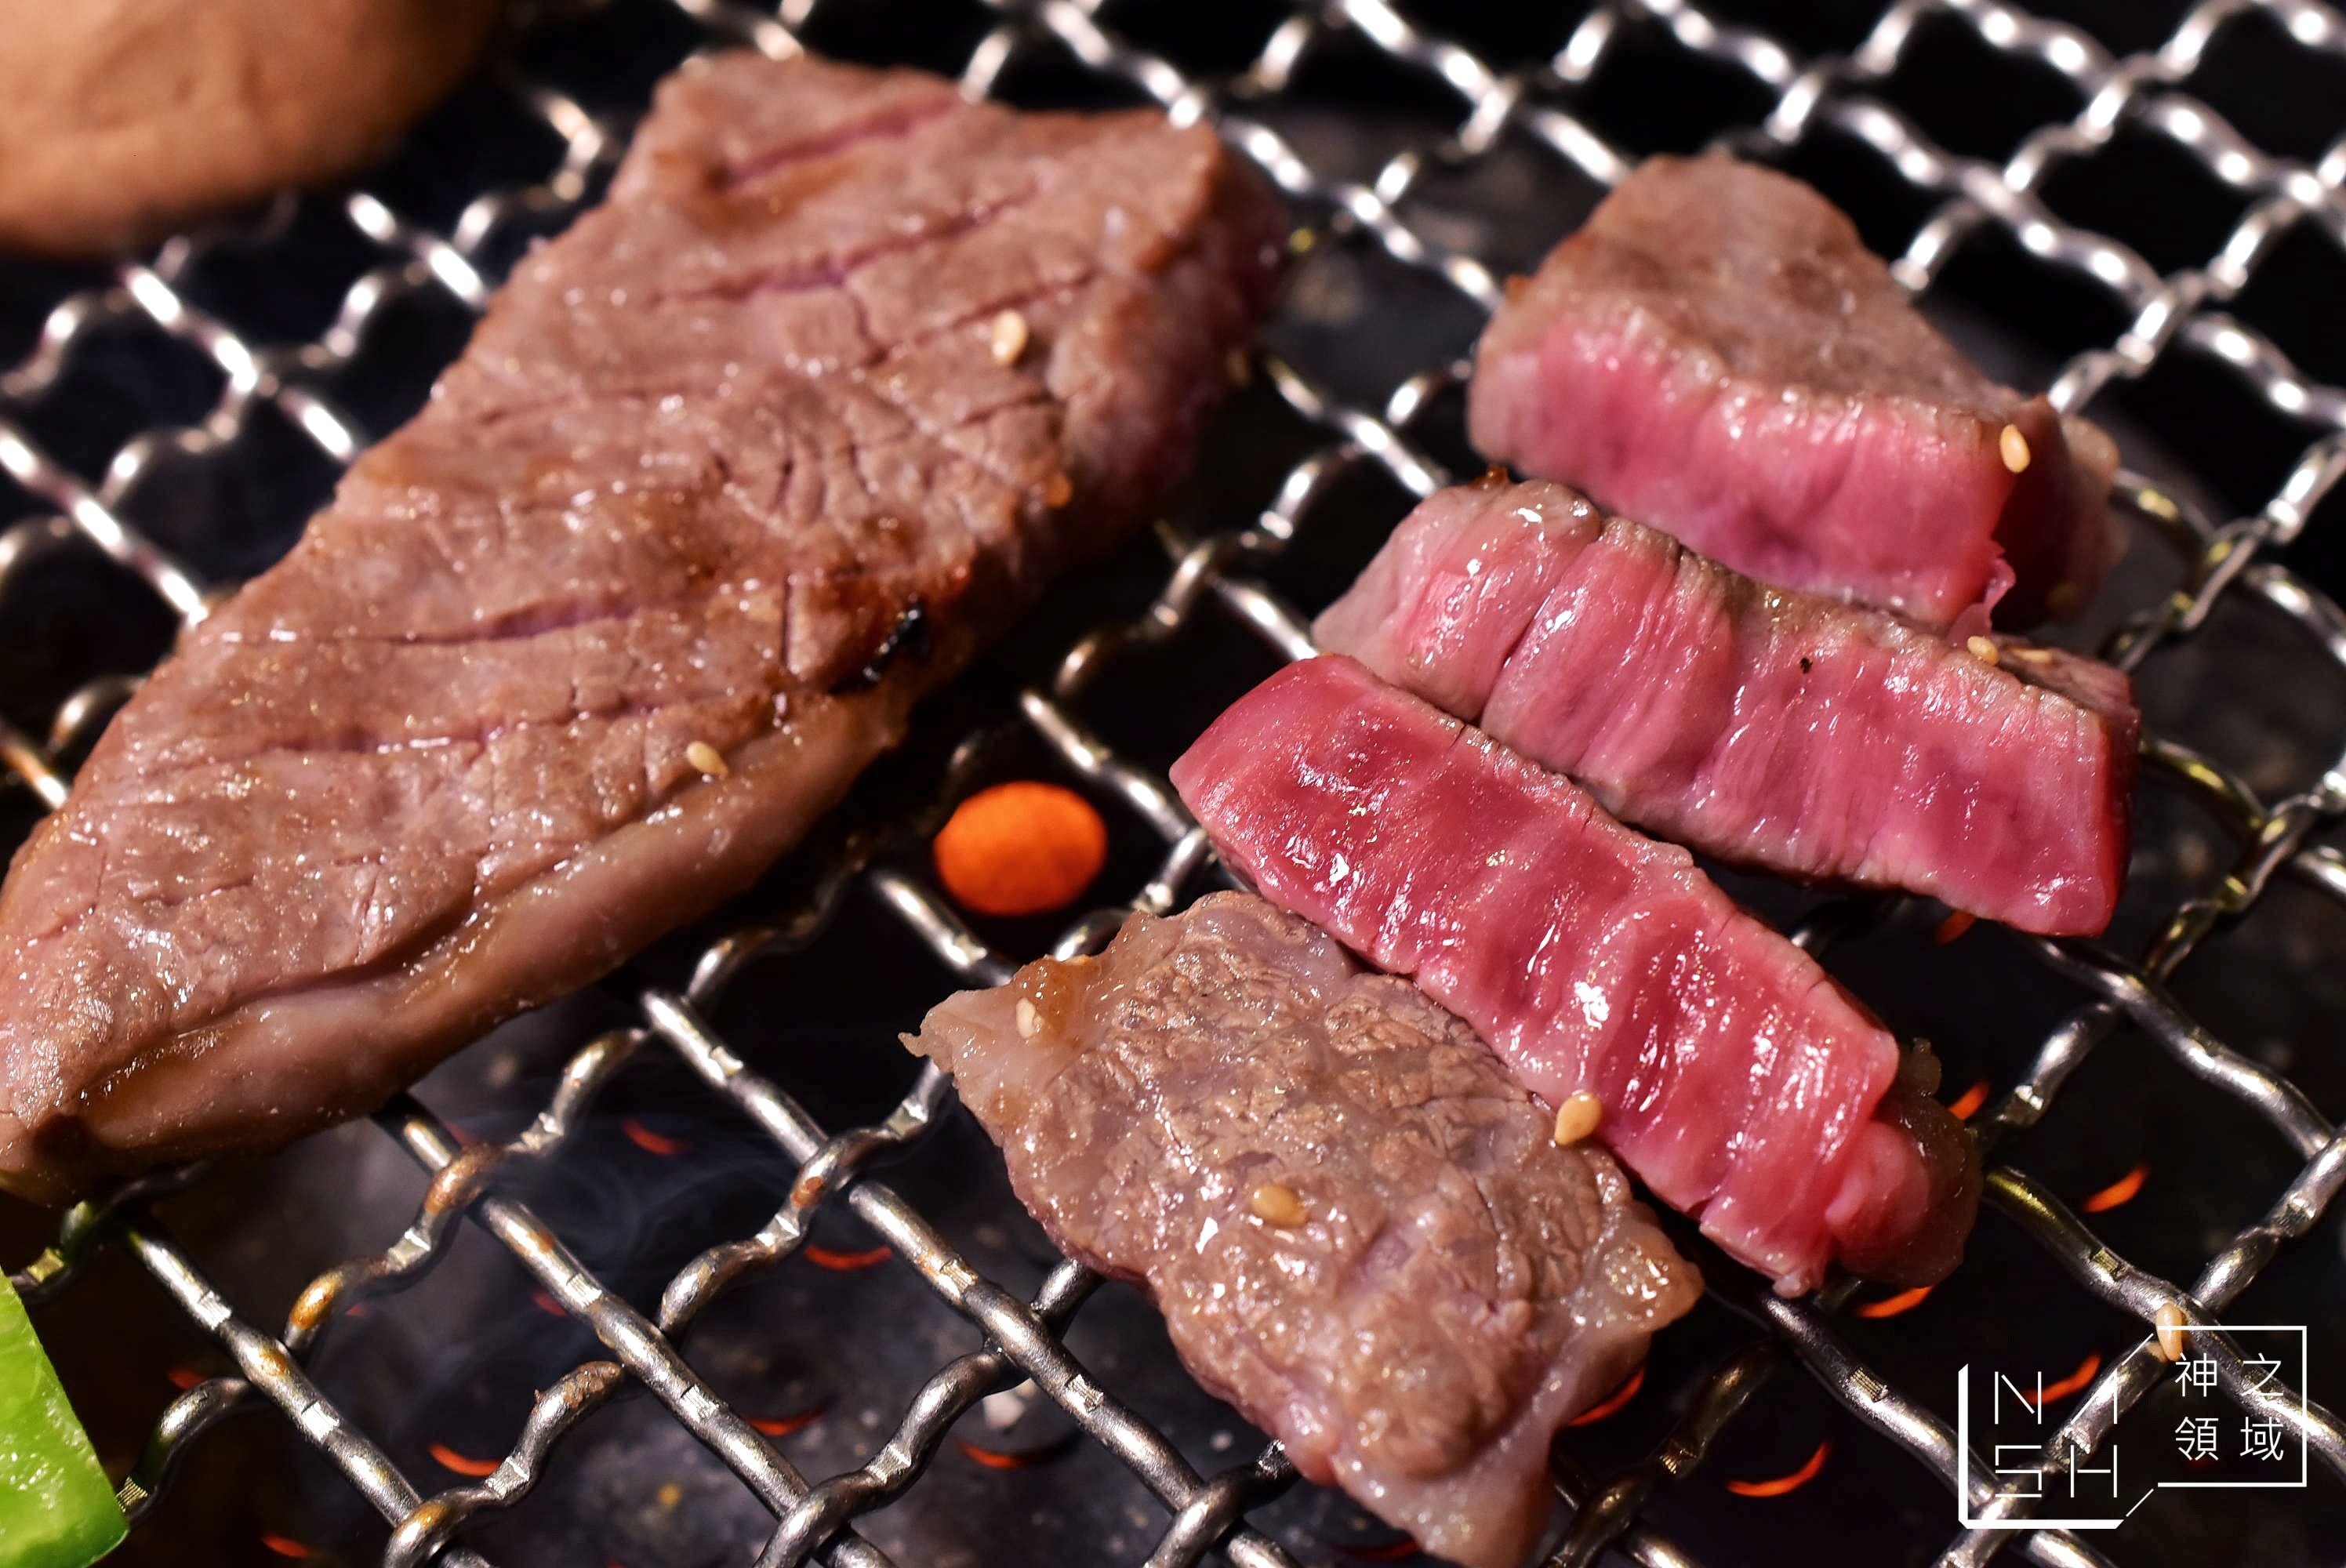 板橋燒肉單點推薦,板橋燒肉推薦,鹿兒島燒肉專賣店